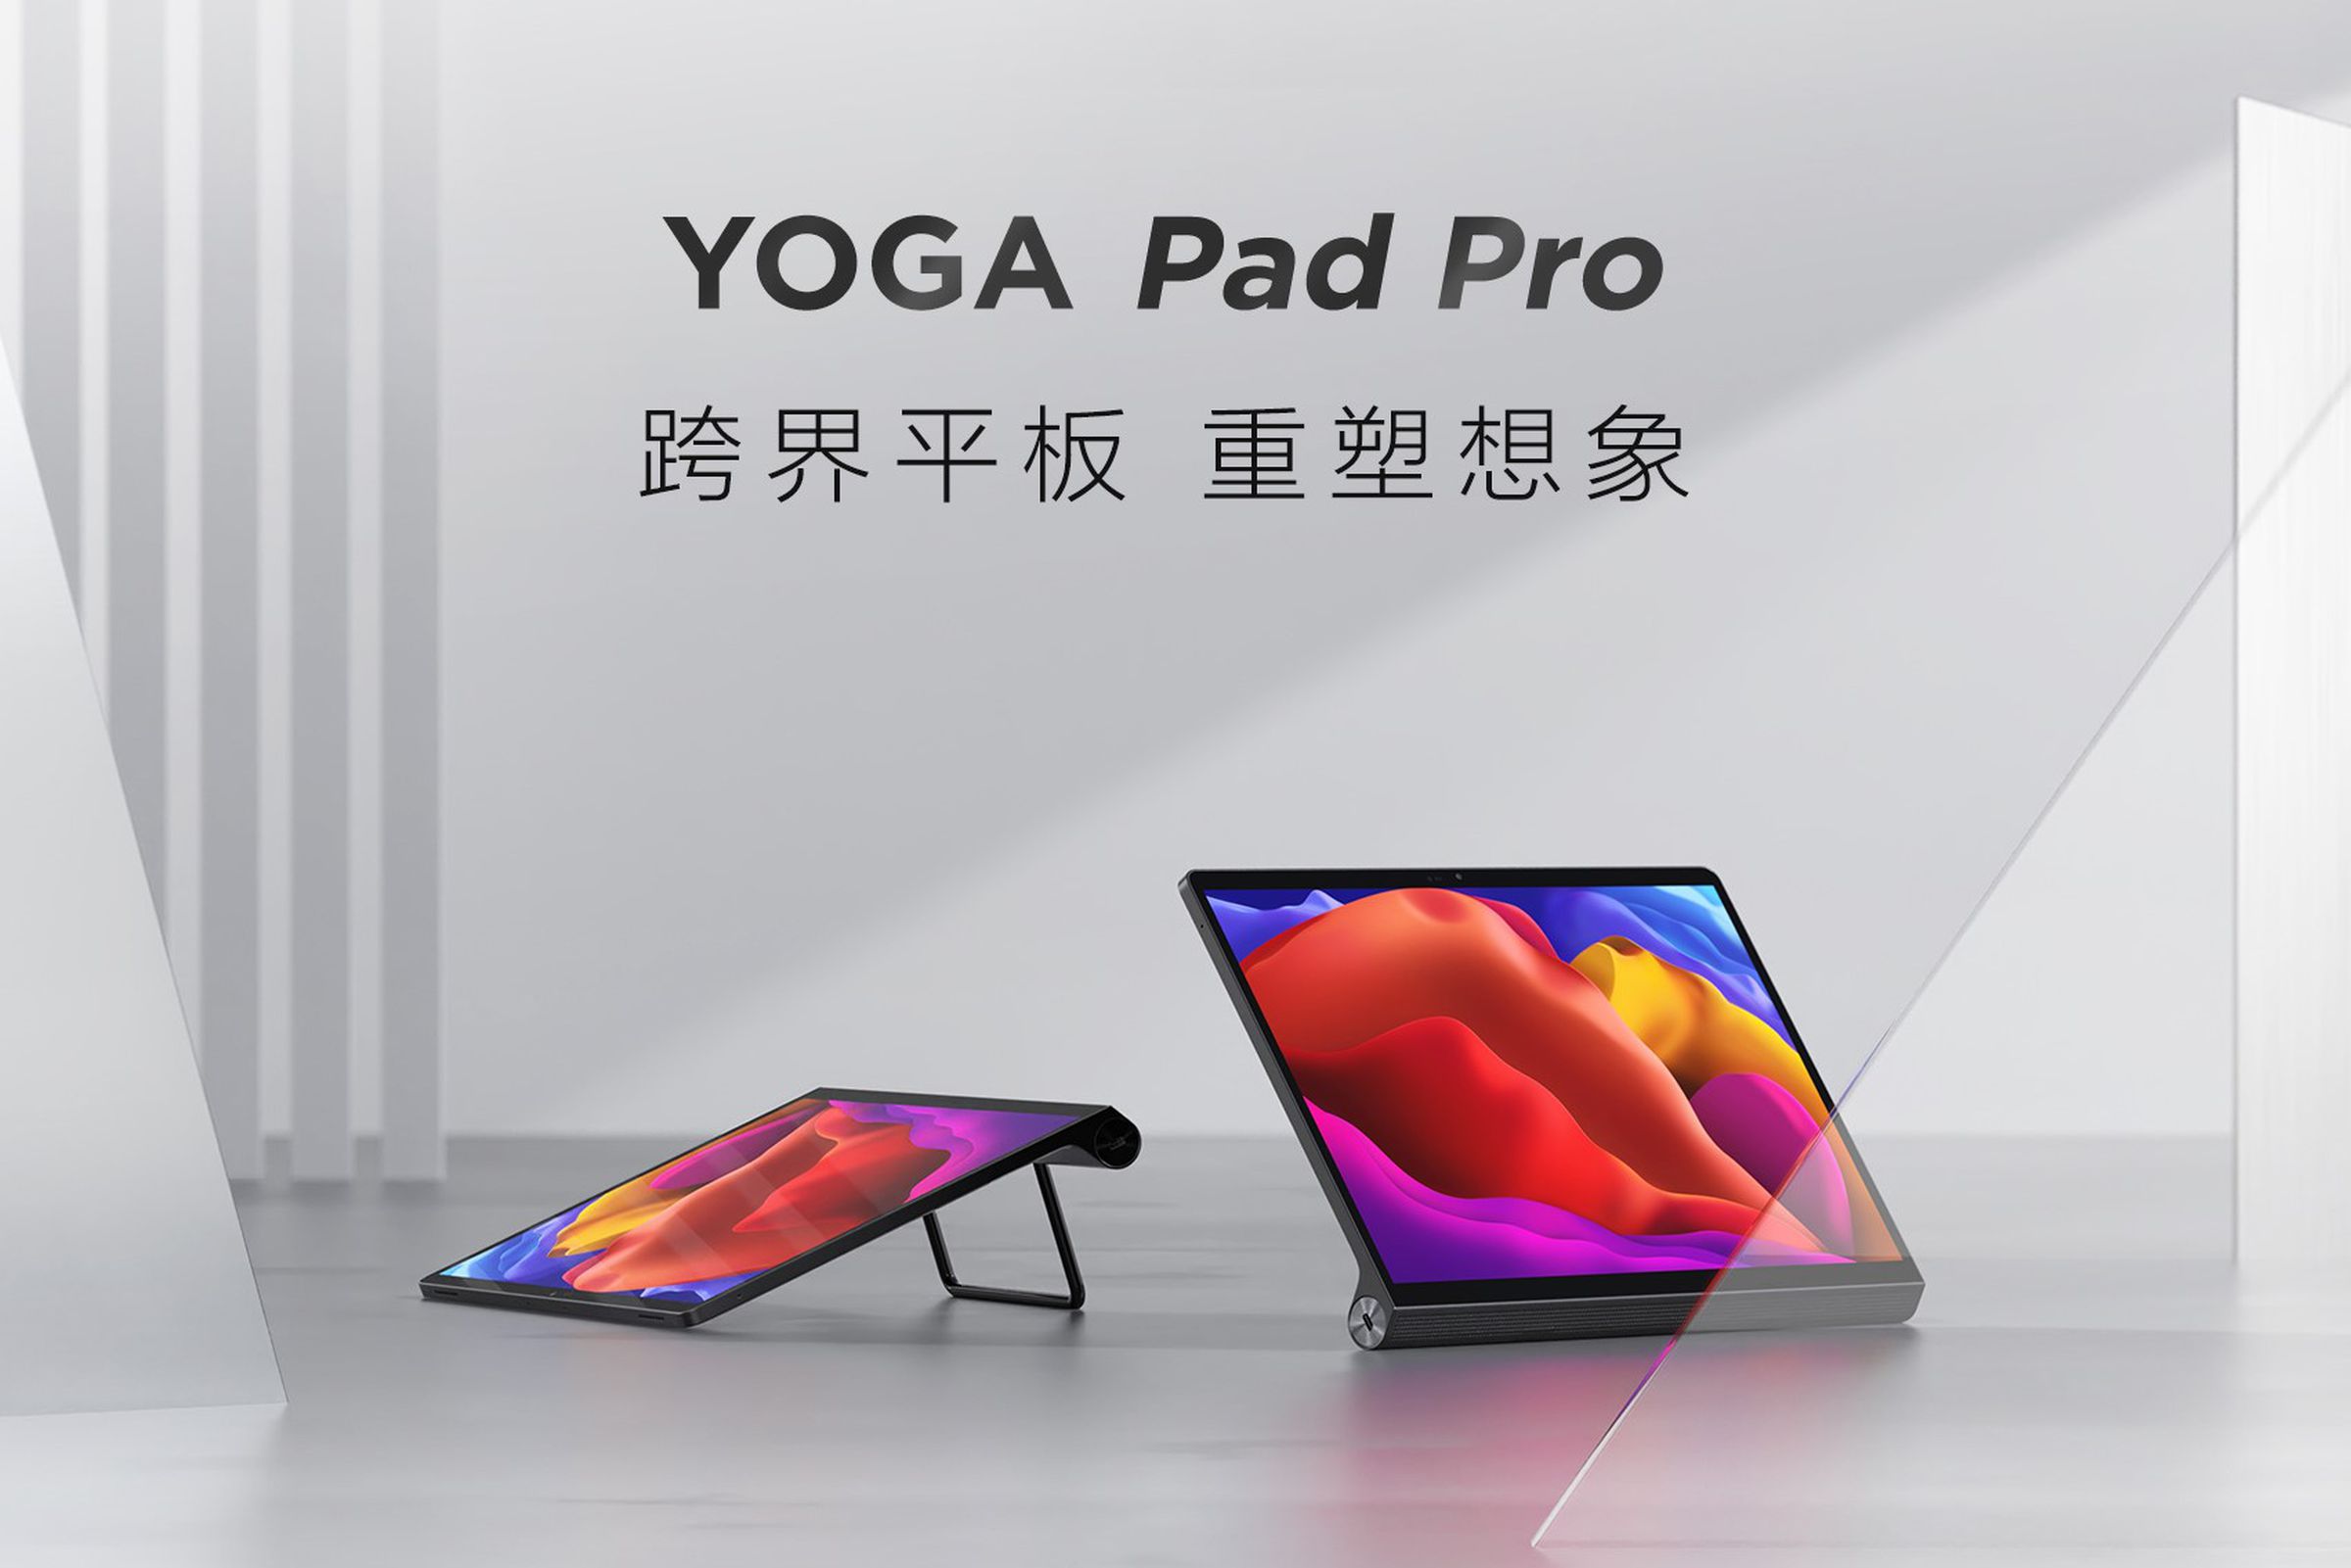 The Lenovo Yoga Pad Pro.